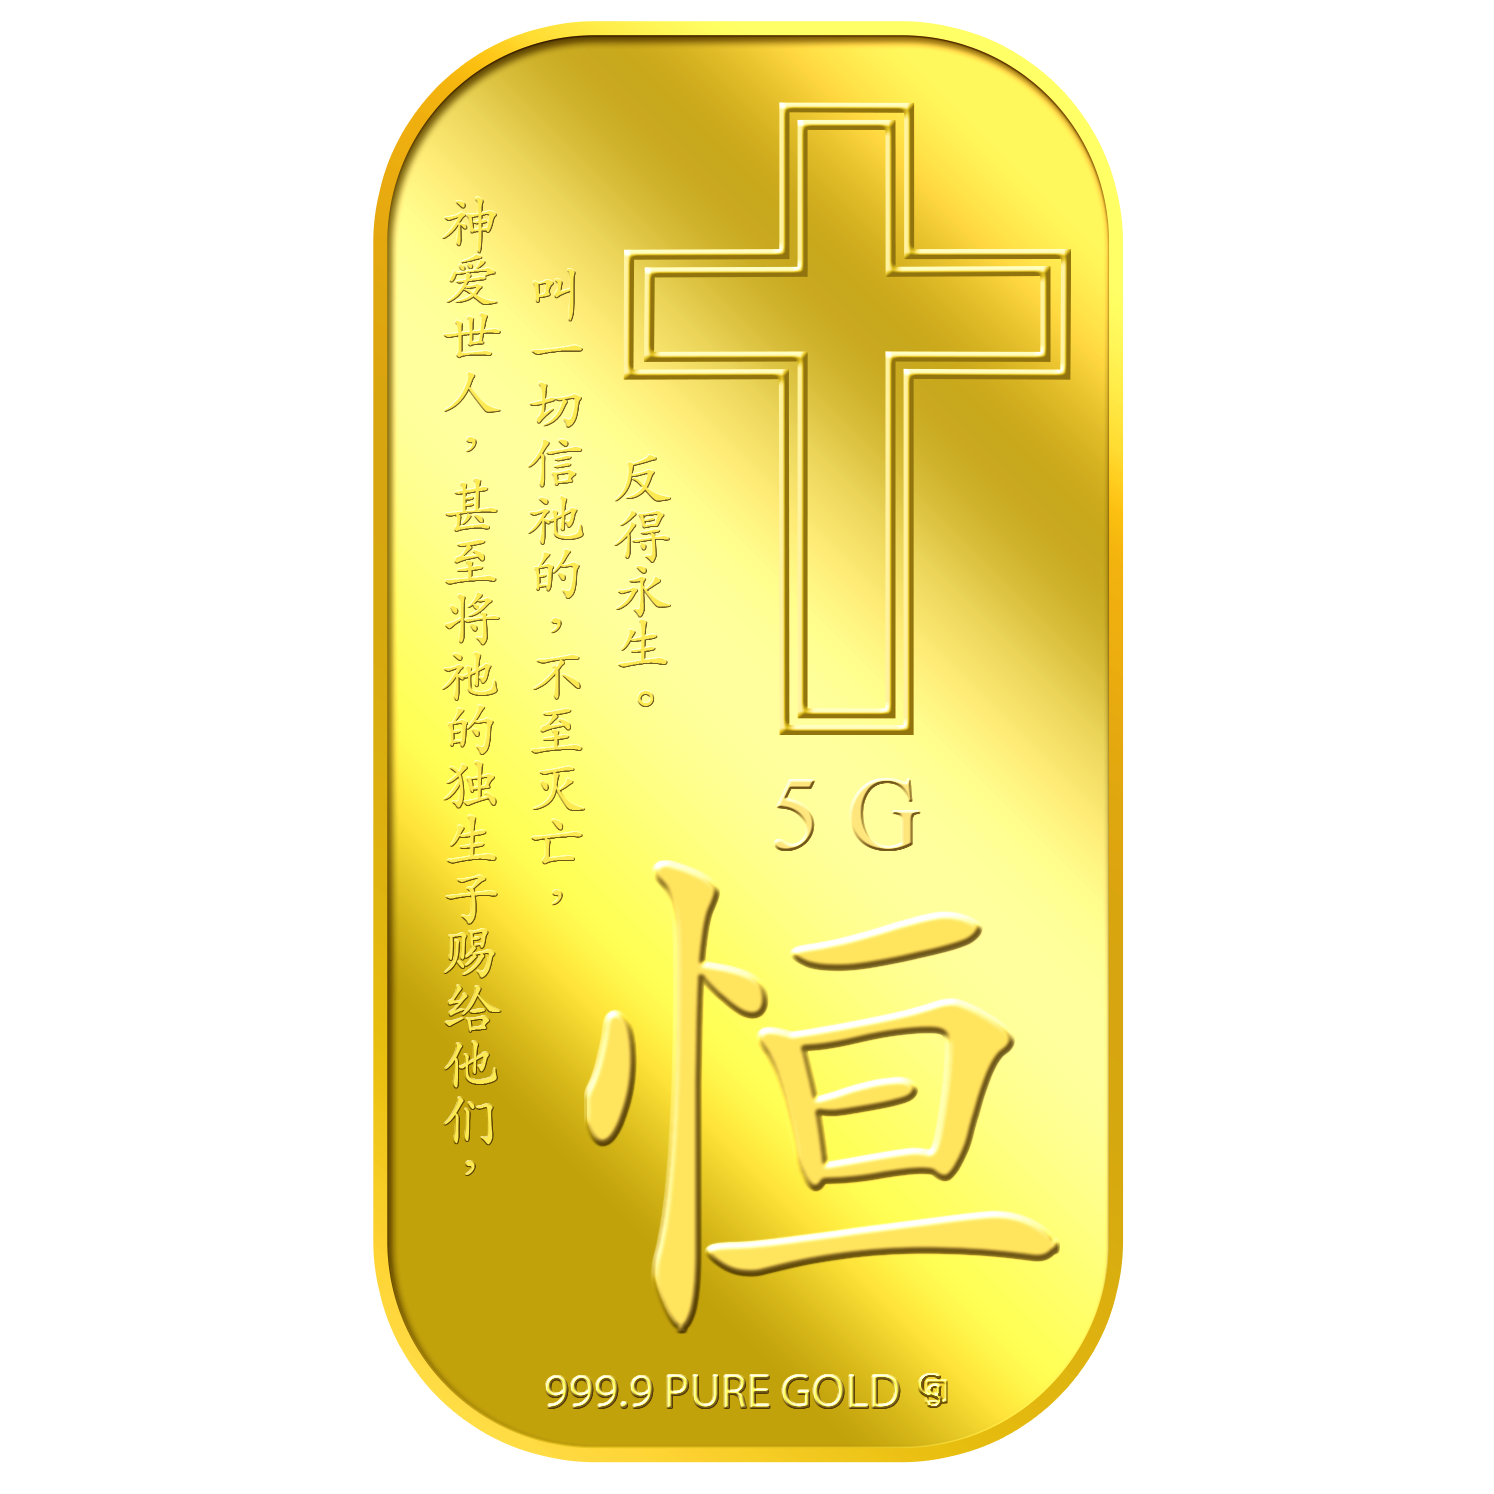 5G Eternity (Heng) GOLD BAR